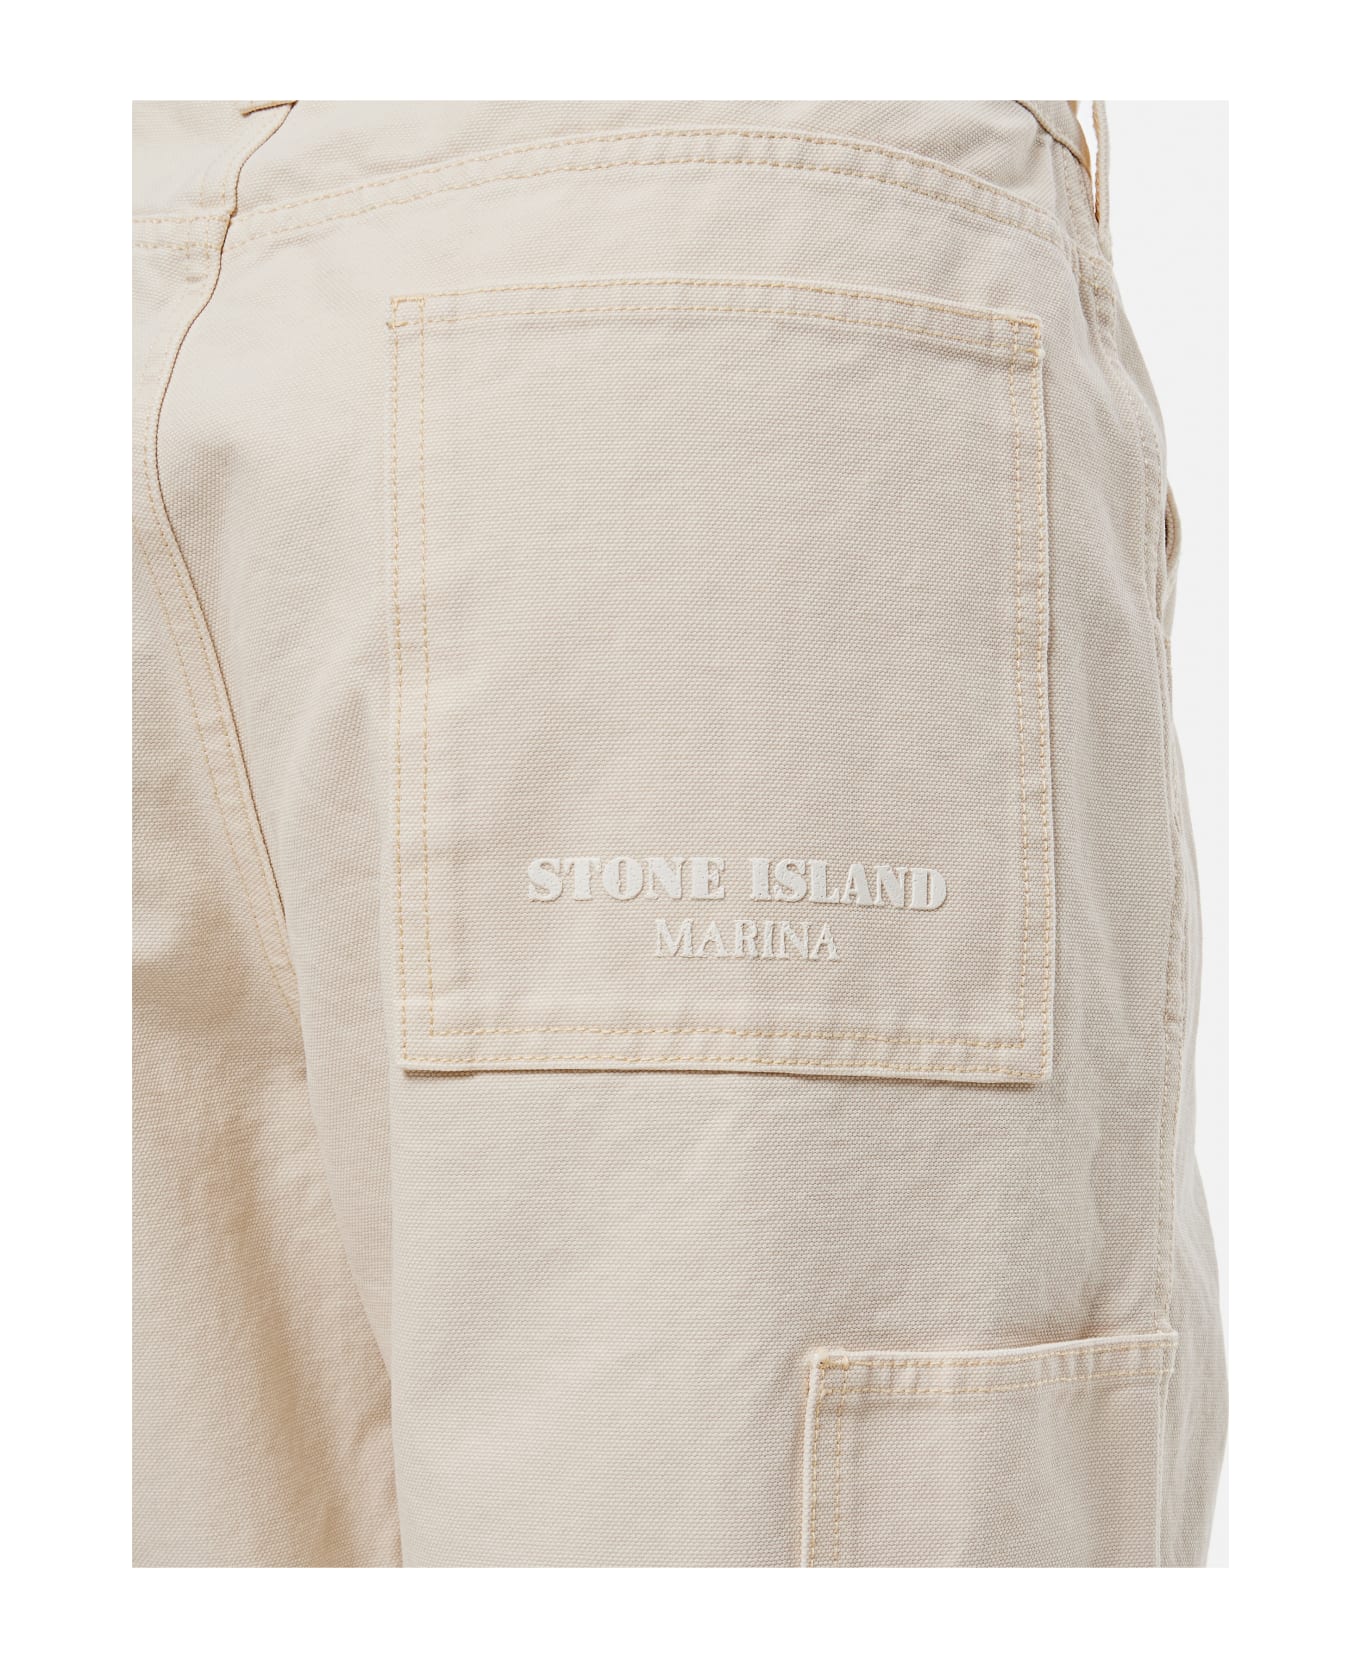 Stone Island Marina Trousers - beige